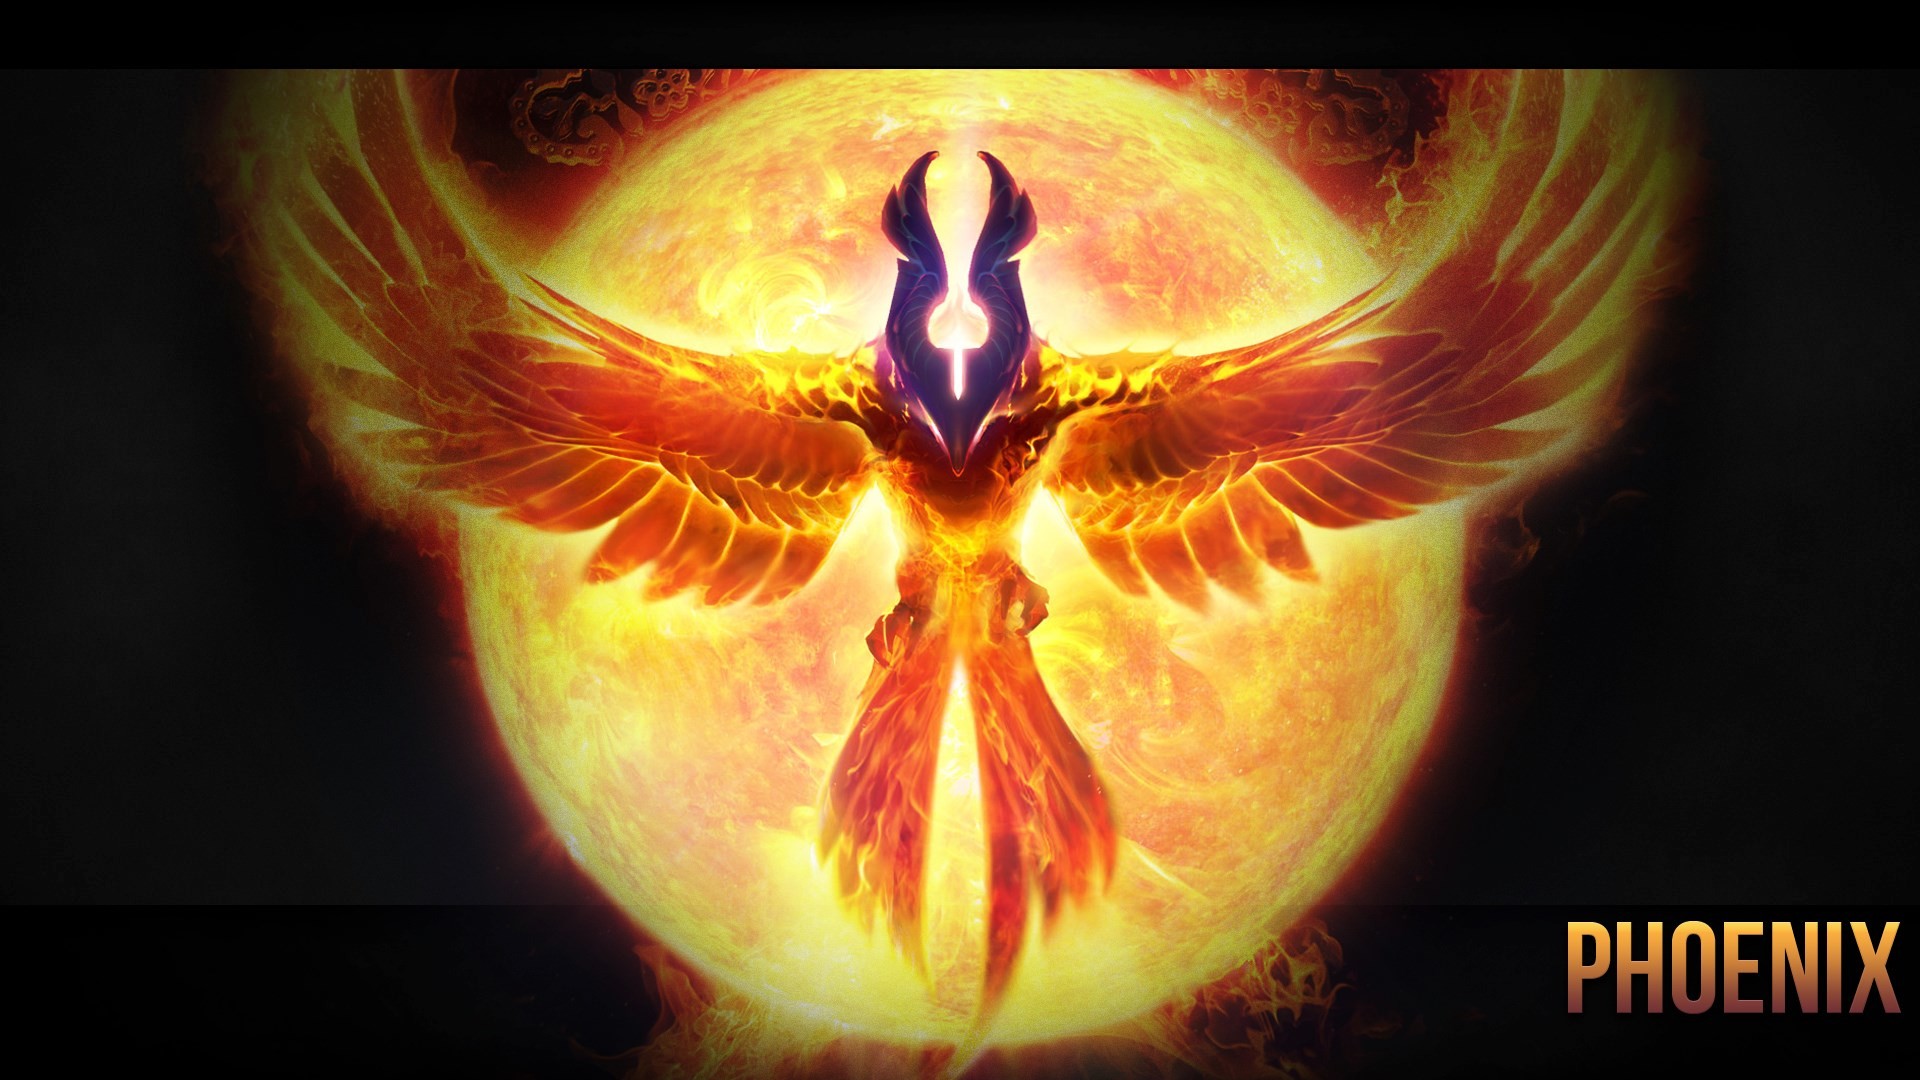 phoenix-sun